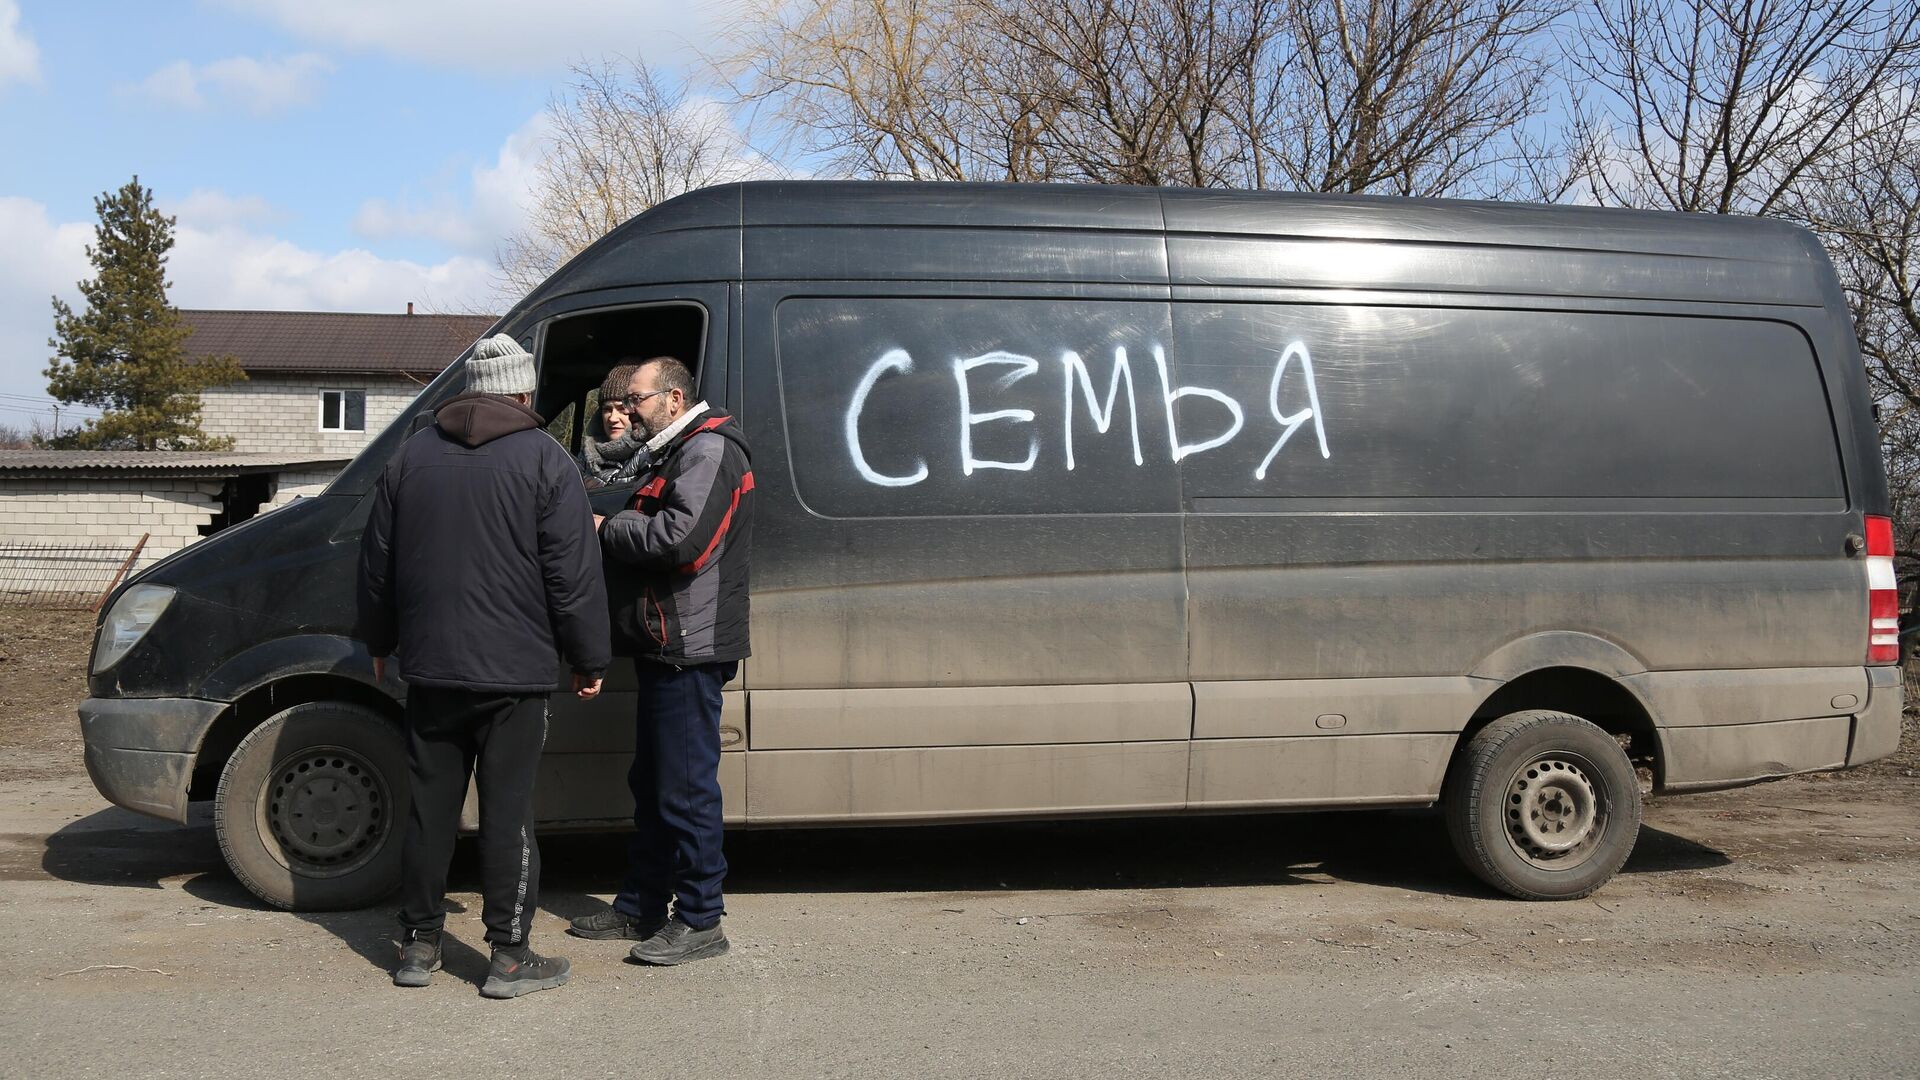 Жители покидают Мариуполь на машине с надписью Семья - РИА Новости, 1920, 08.06.2022